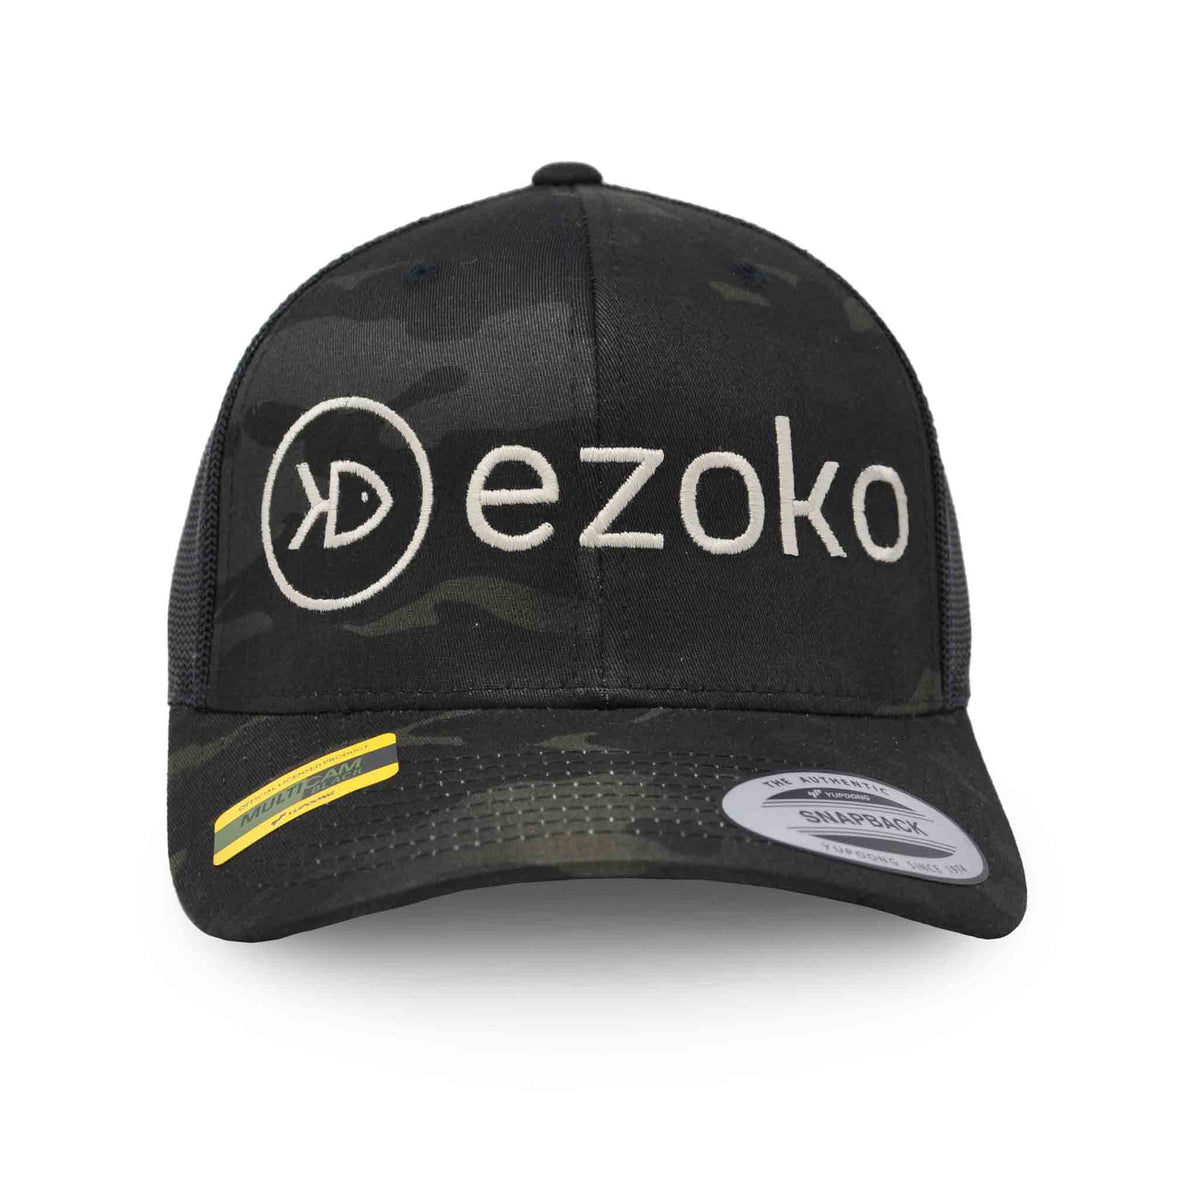 Ezoko Classics YUPOONG Retro Trucker cap MultiCam Black Normal Grey Hats